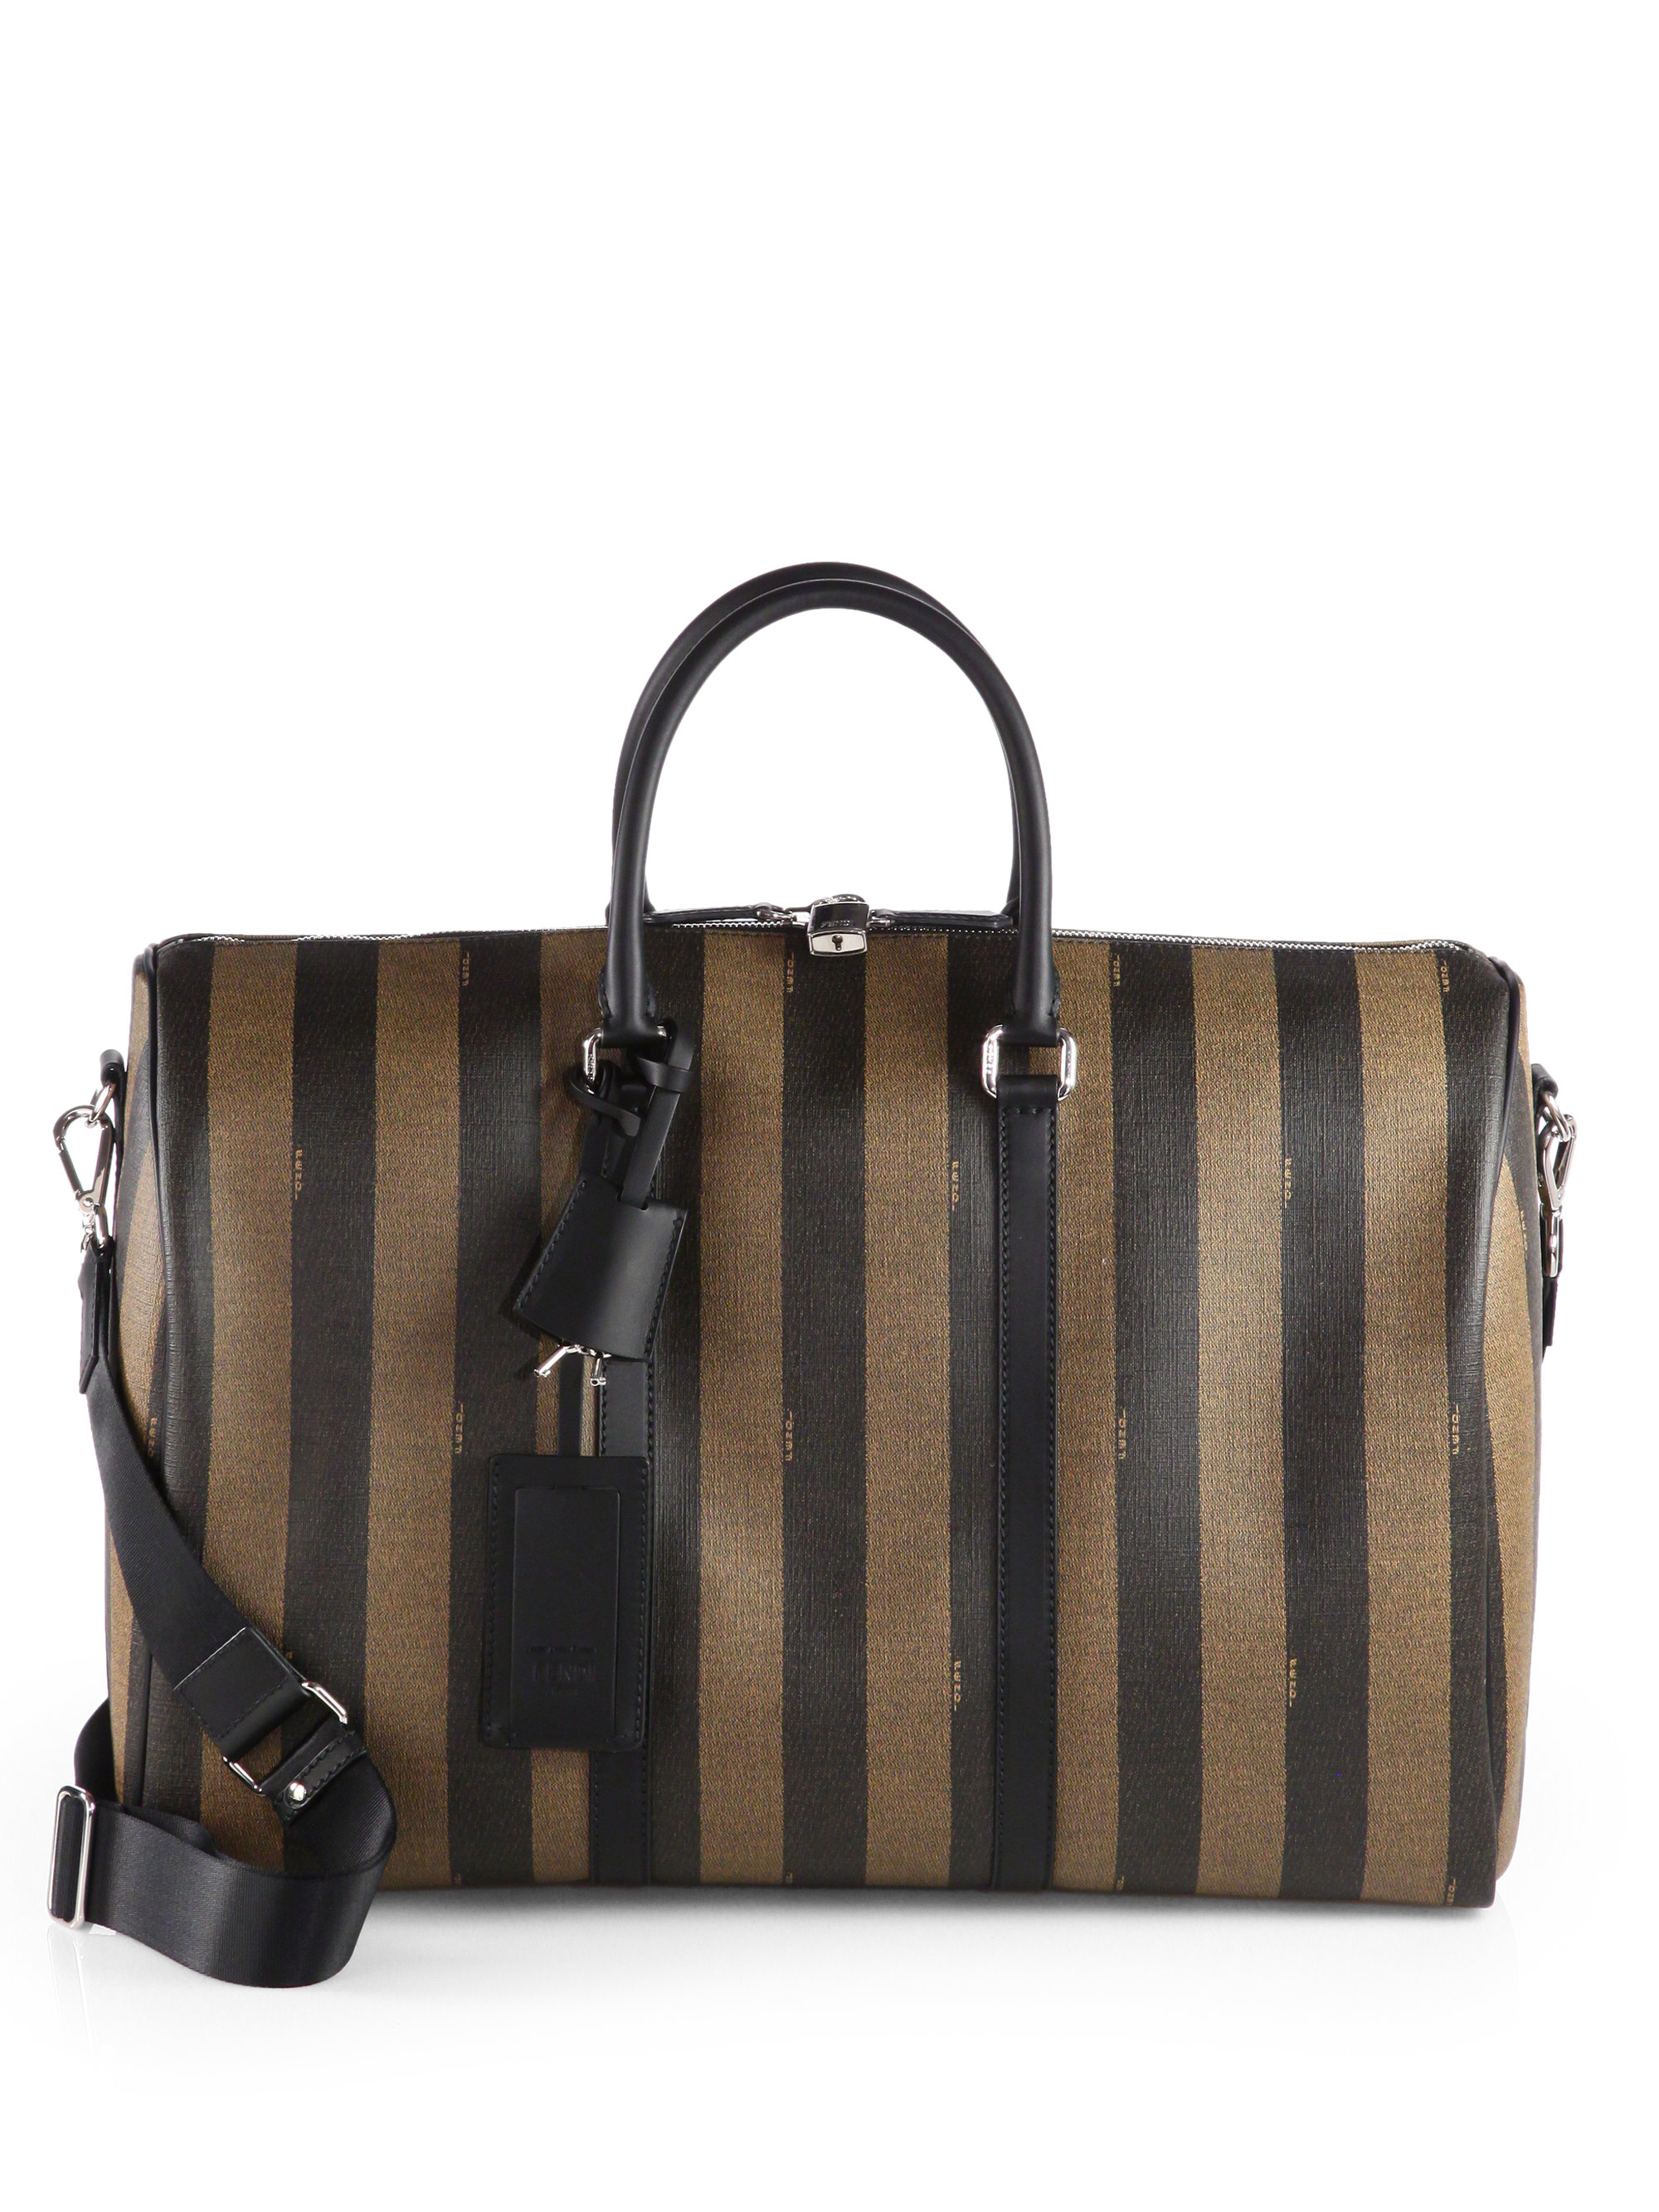 Lyst - Fendi Striped Weekender Bag in Brown for Men